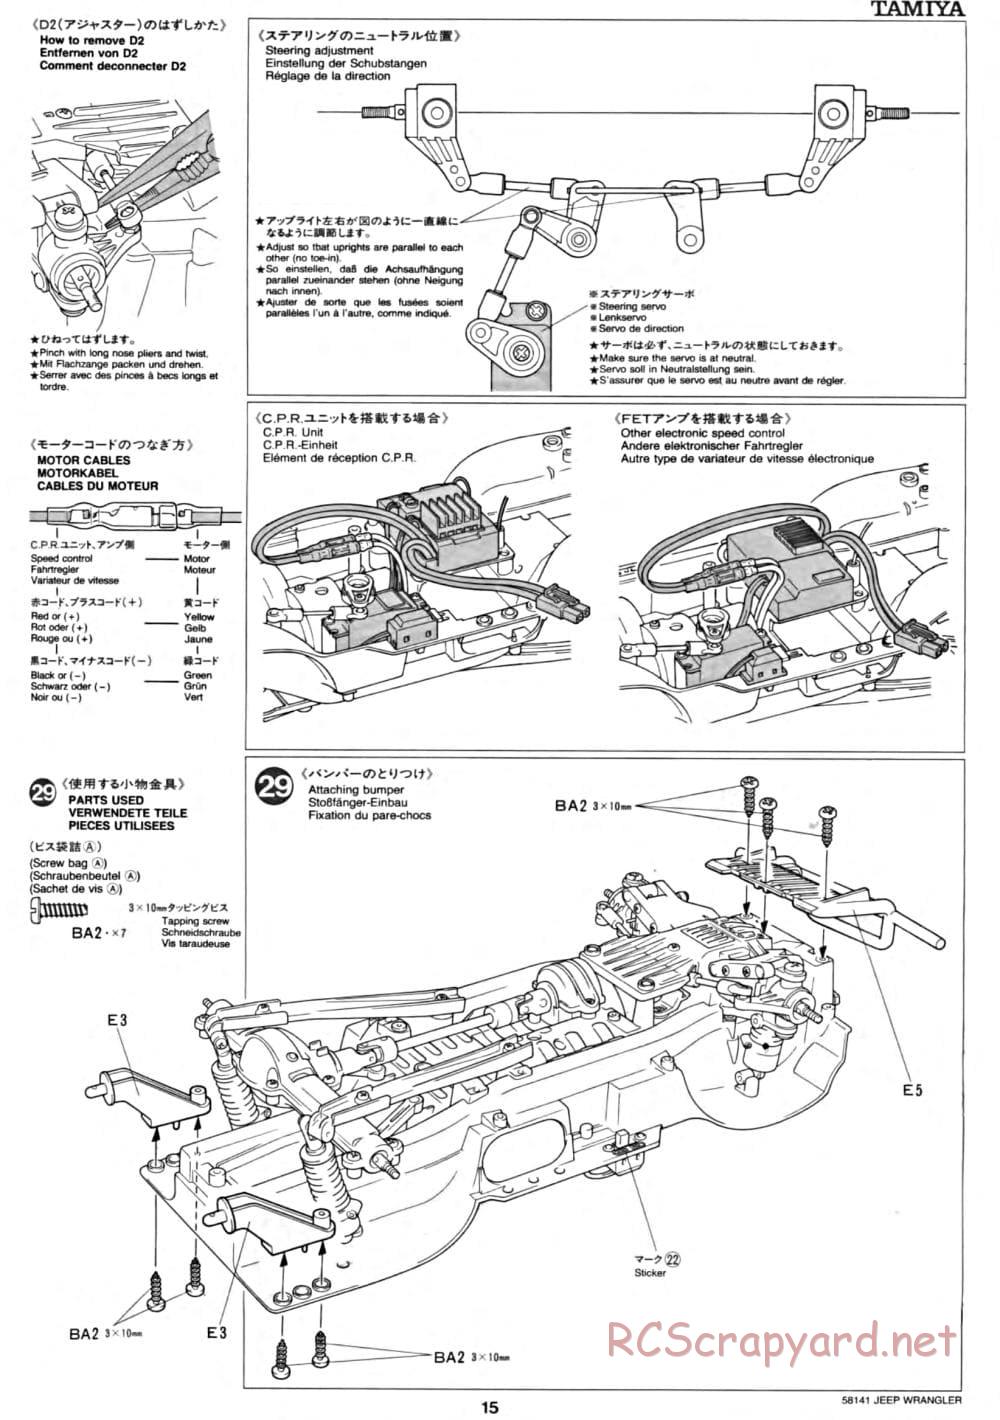 Tamiya - Jeep Wrangler - CC-01 Chassis - Manual - Page 15